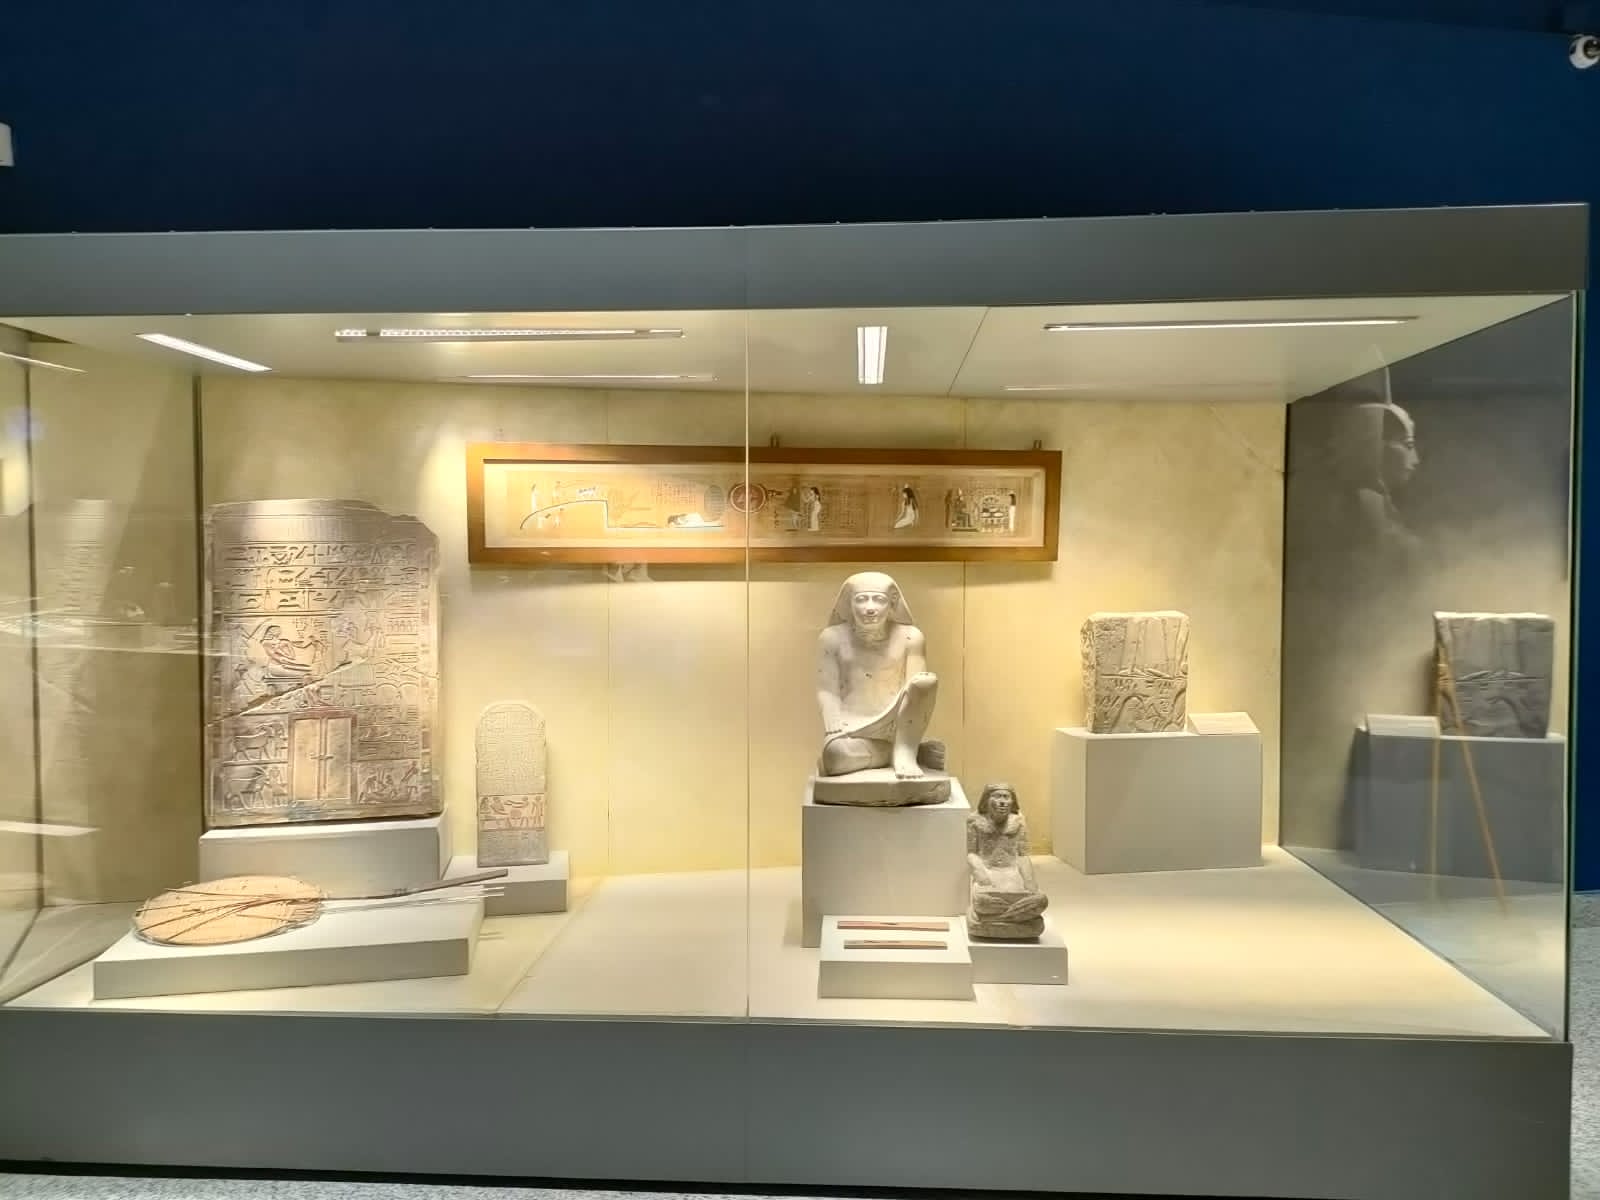 ”مصر وإرثها البيئي“ في معرض مؤقت بمتحف شرم الشيخ بمناسبة استضافة "COP27"